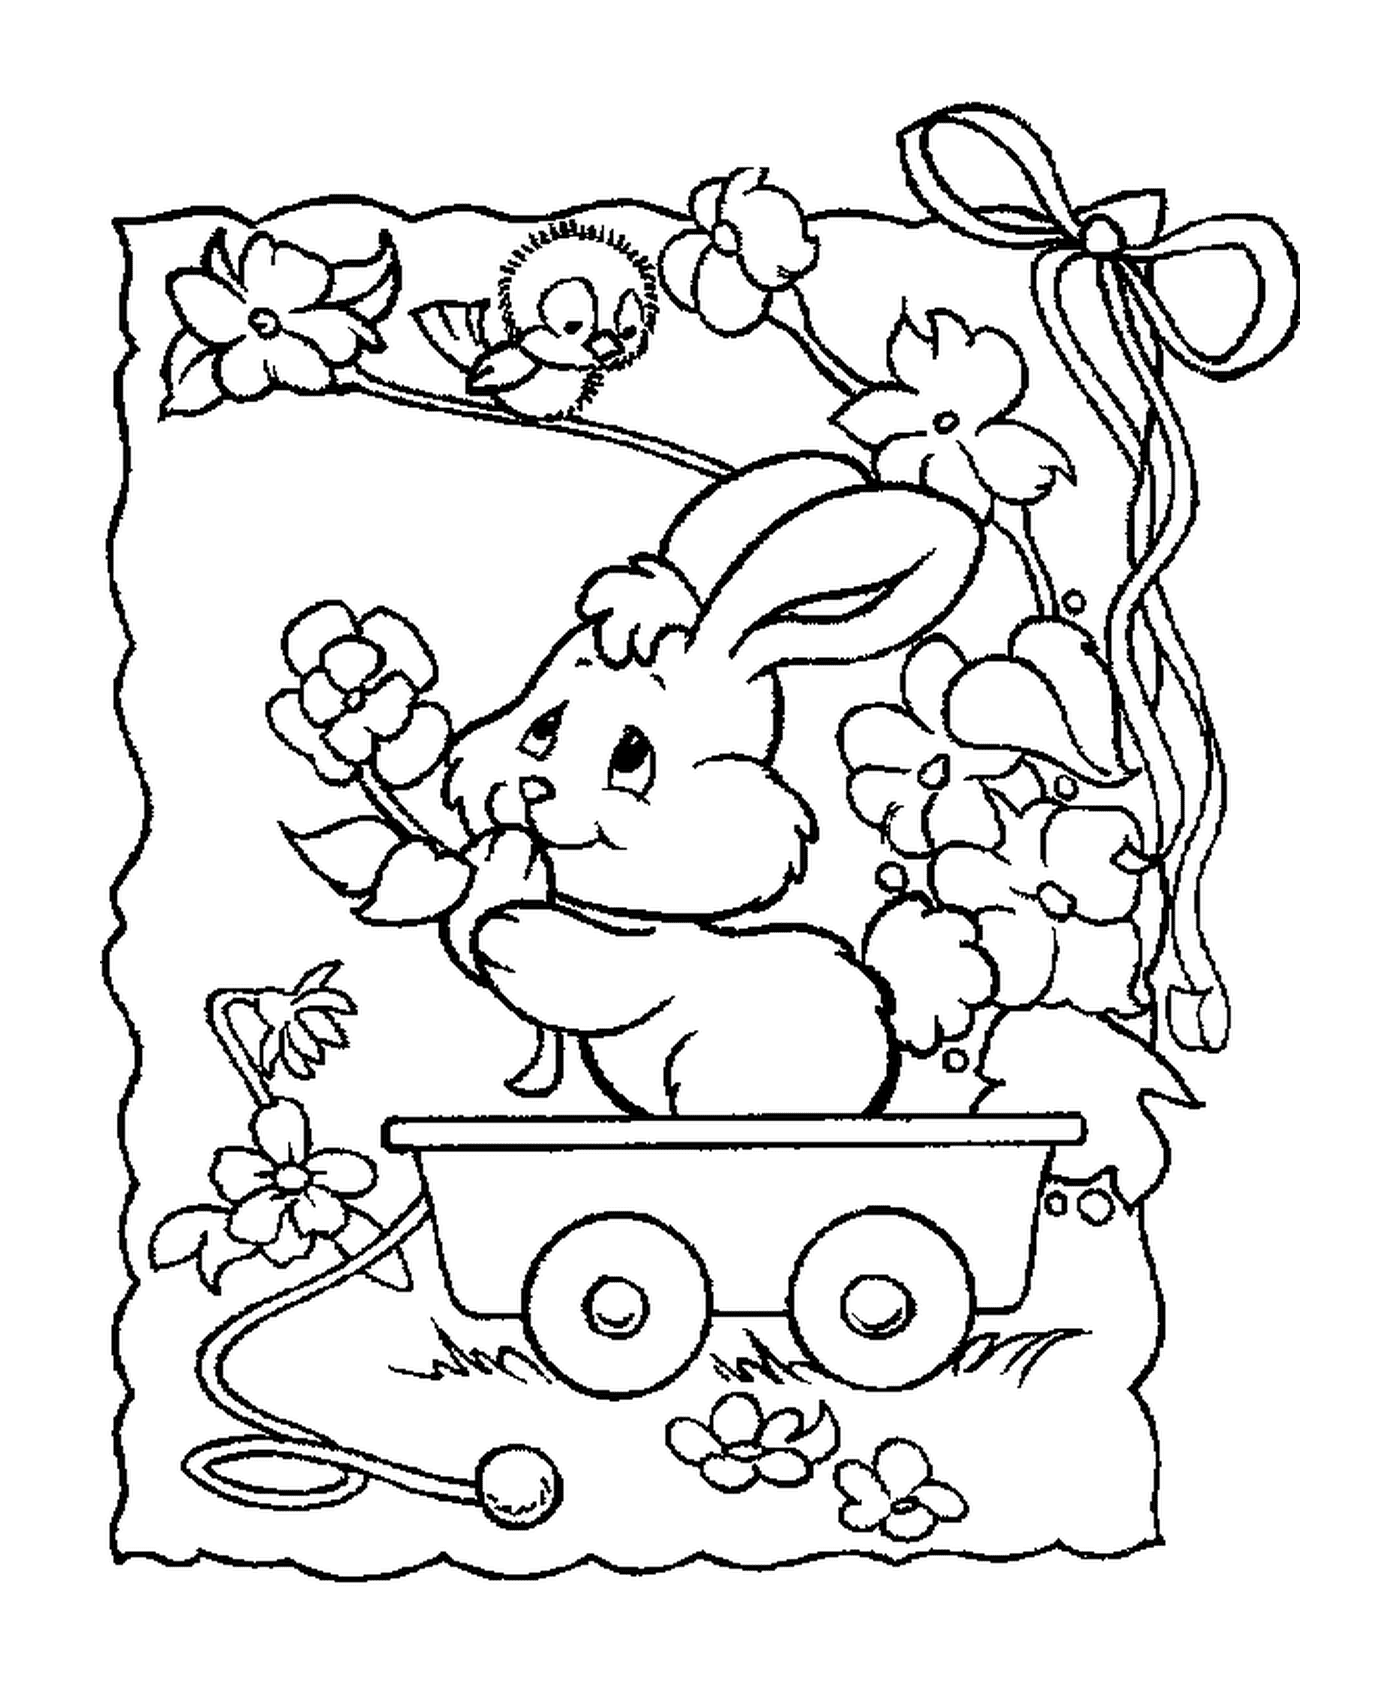   Un lapin assis dans un chariot 